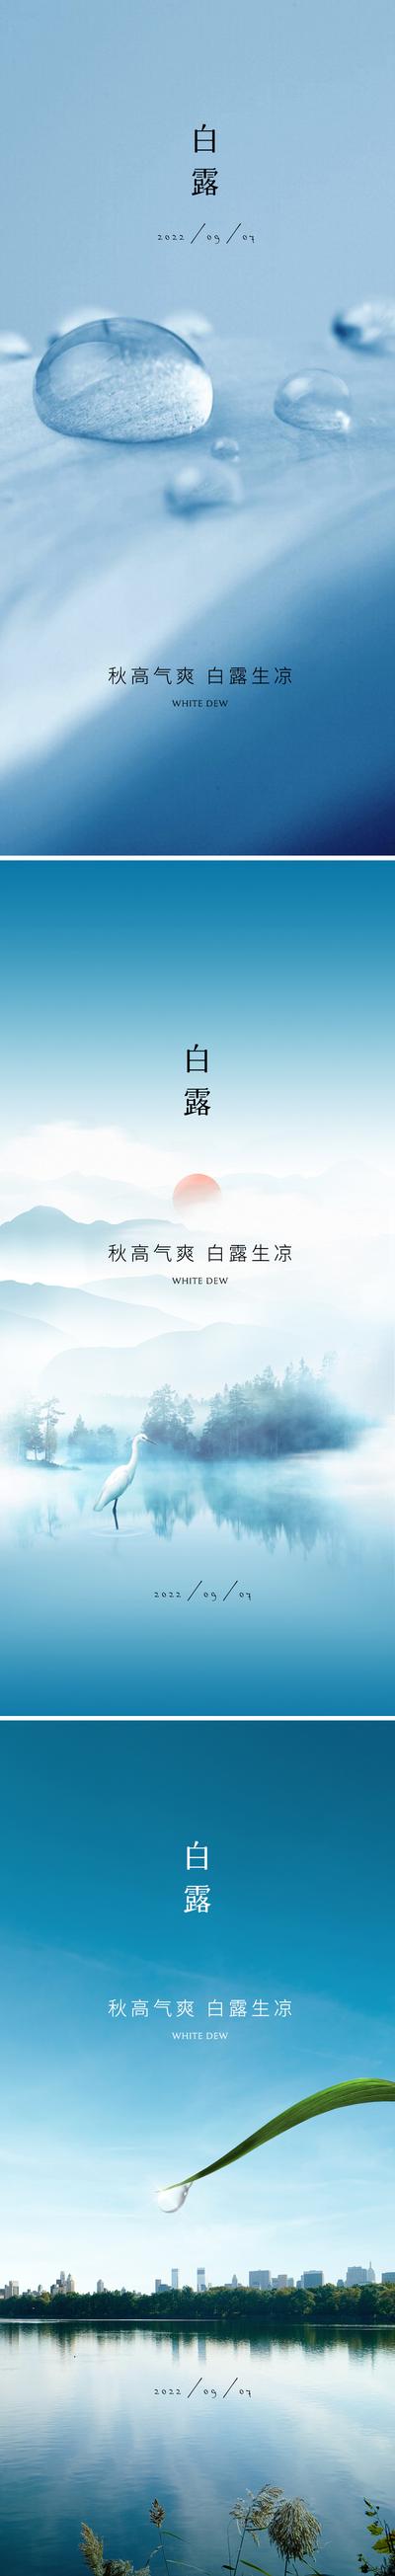 南门网 广告 海报 二十四节气 白露 露珠 水珠 湖面 树叶